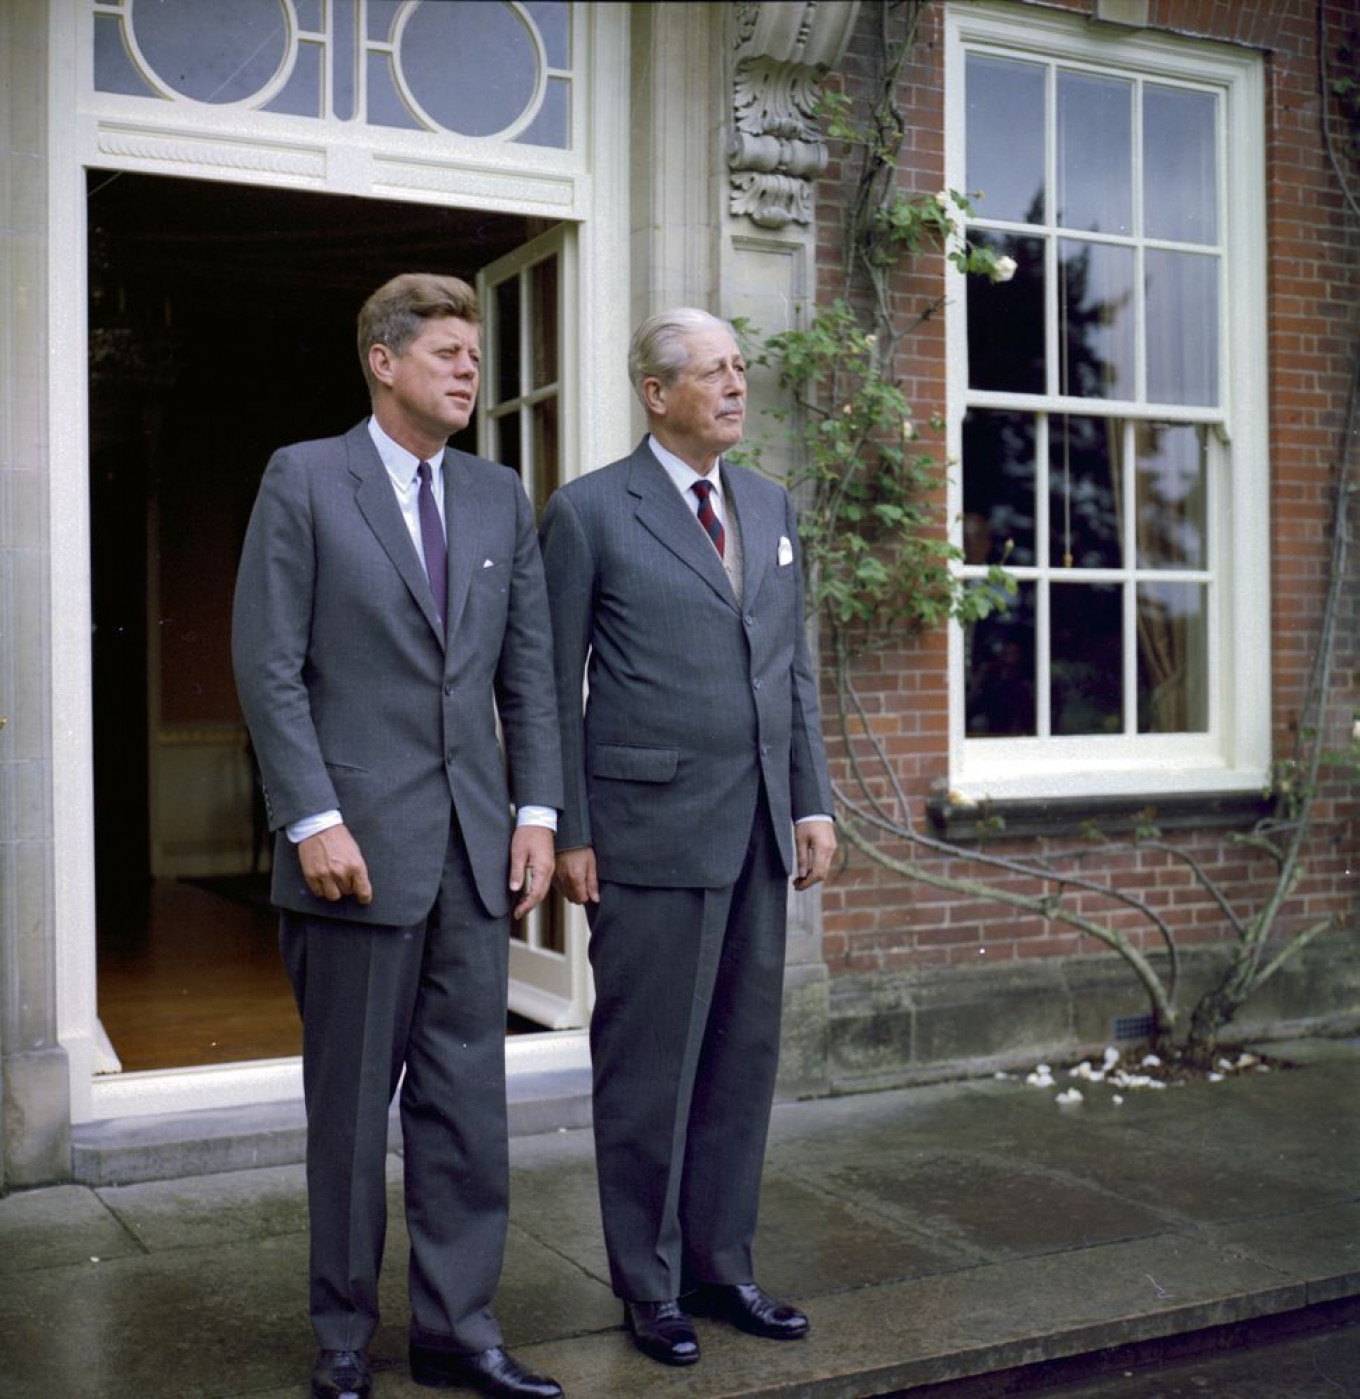 Perpustakaan dan Museum Kepresidenan Robert LeRoy / John F. Kennedy